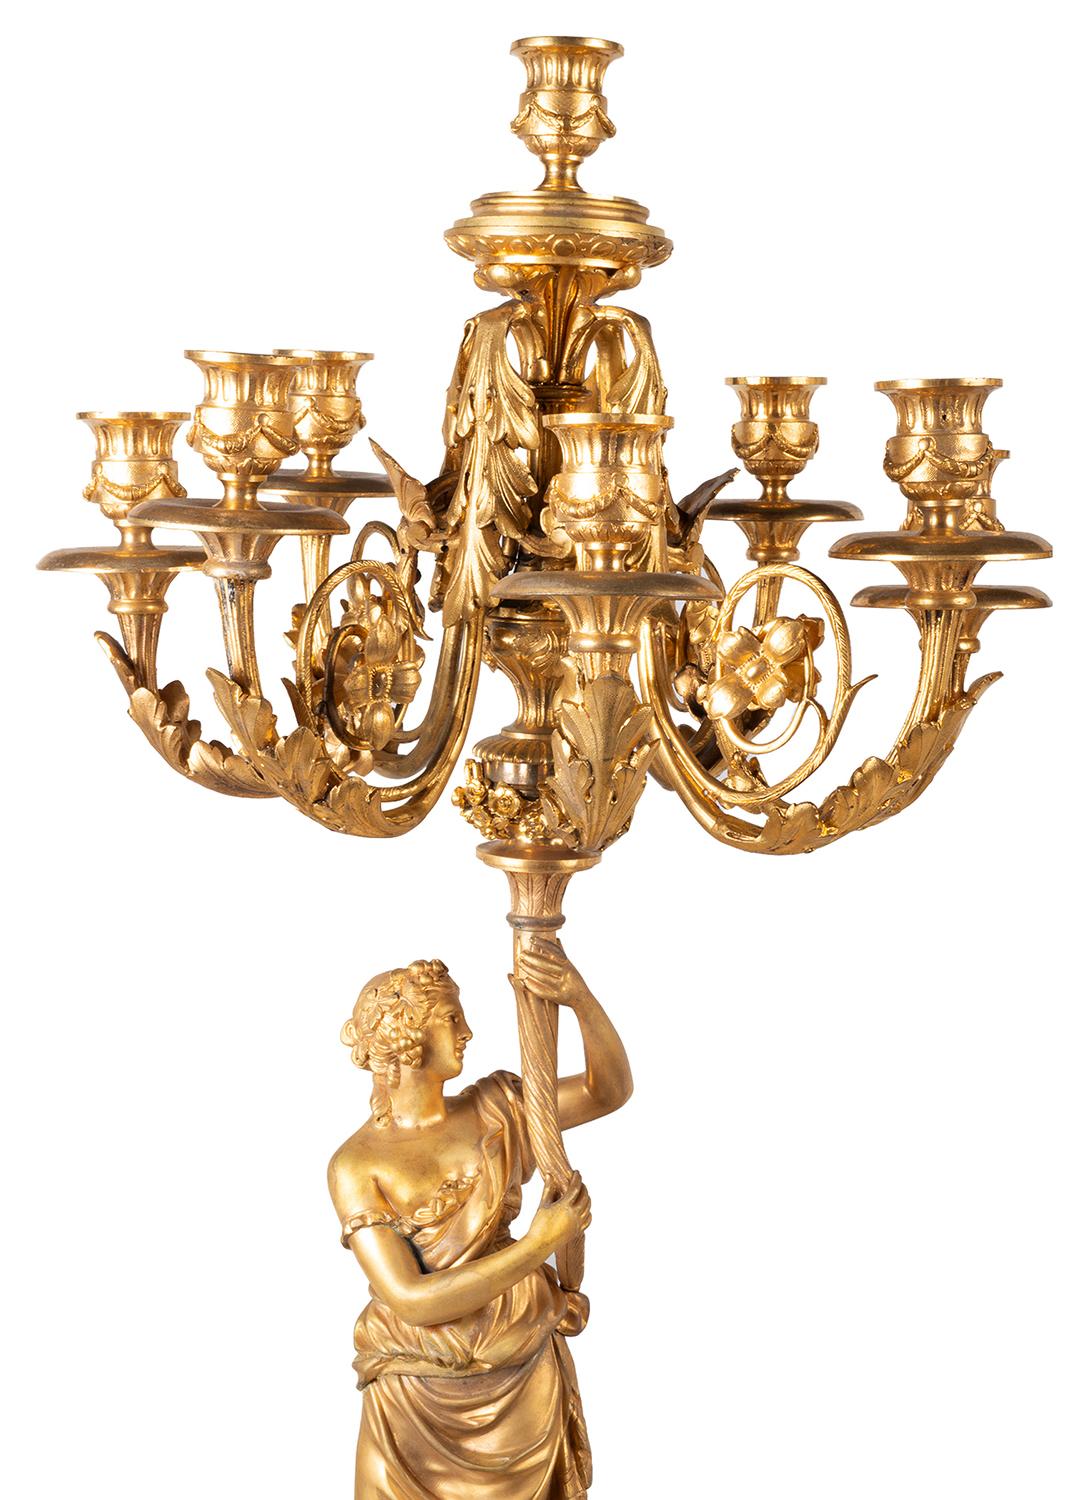 Une grande et impressionnante paire de candélabres classiques du 19ème siècle en bronze doré et marbre blanc. Chacune d'entre elles présente des appliques feuillagées à sept branches, soutenues par des jeunes filles vêtues de robes flottantes et